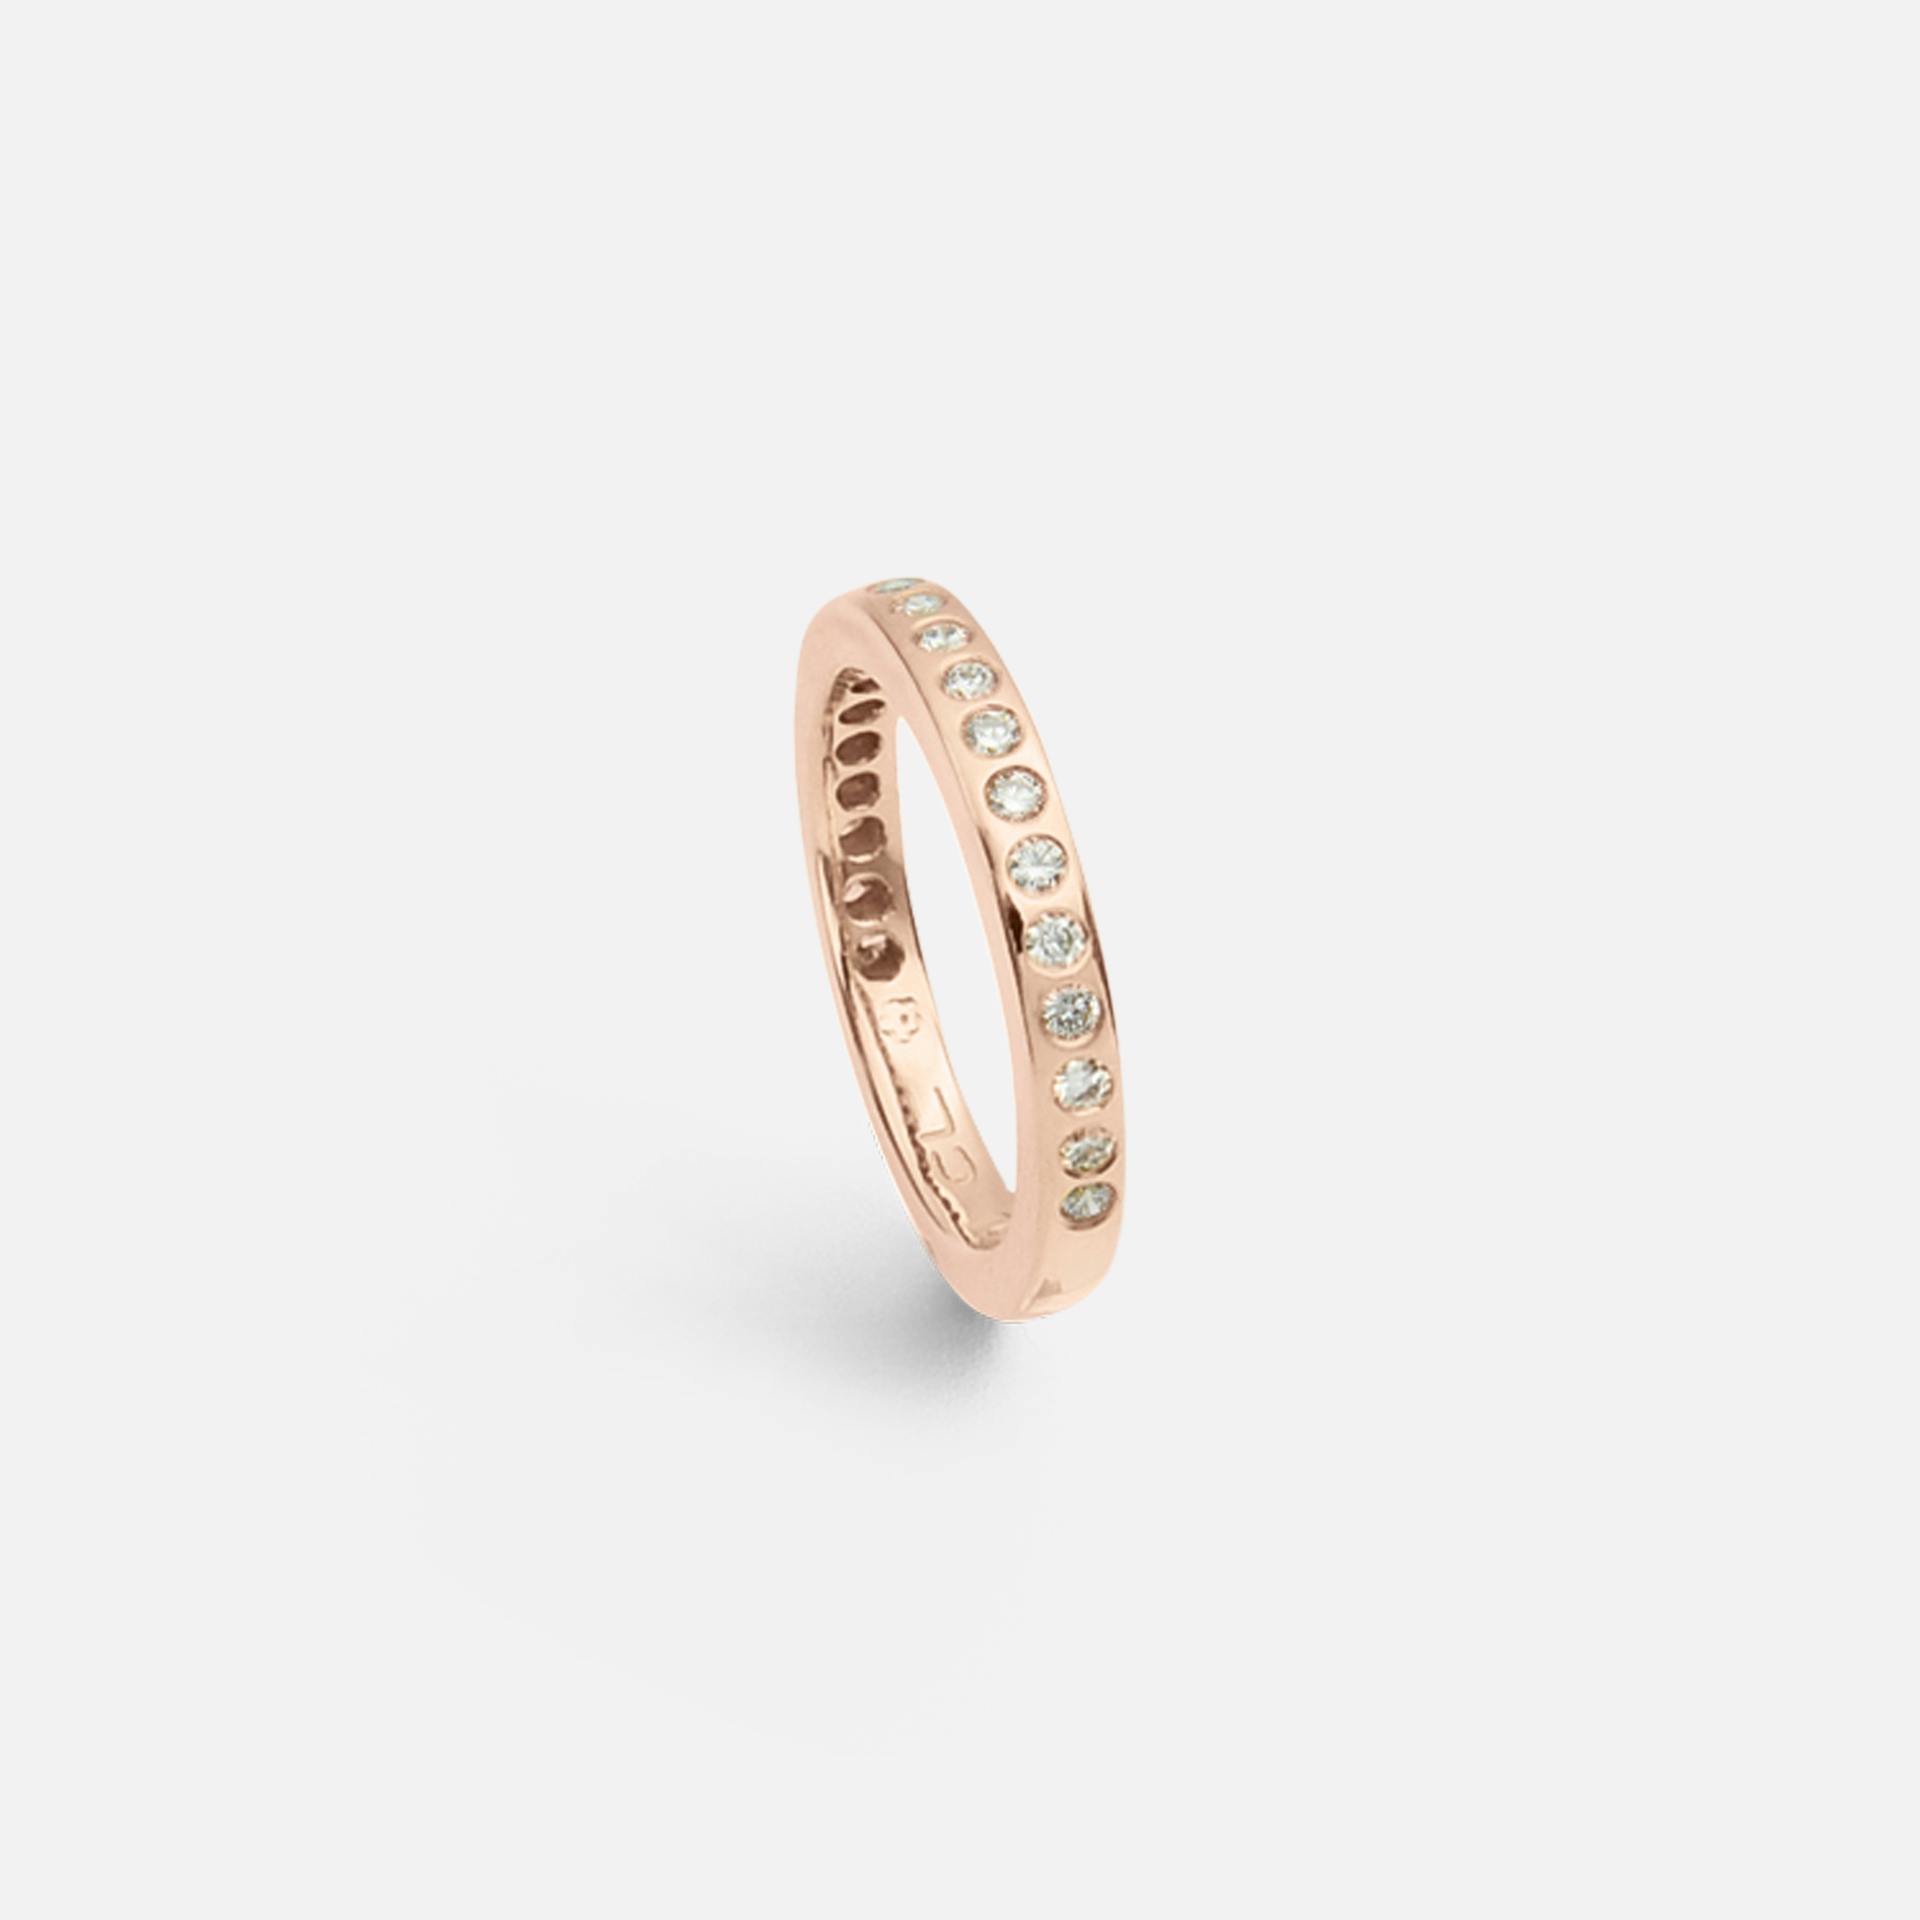 Forever Love ring 18k blank rosaguld med diamanter 0,38-0,46 ct. TW. VS.